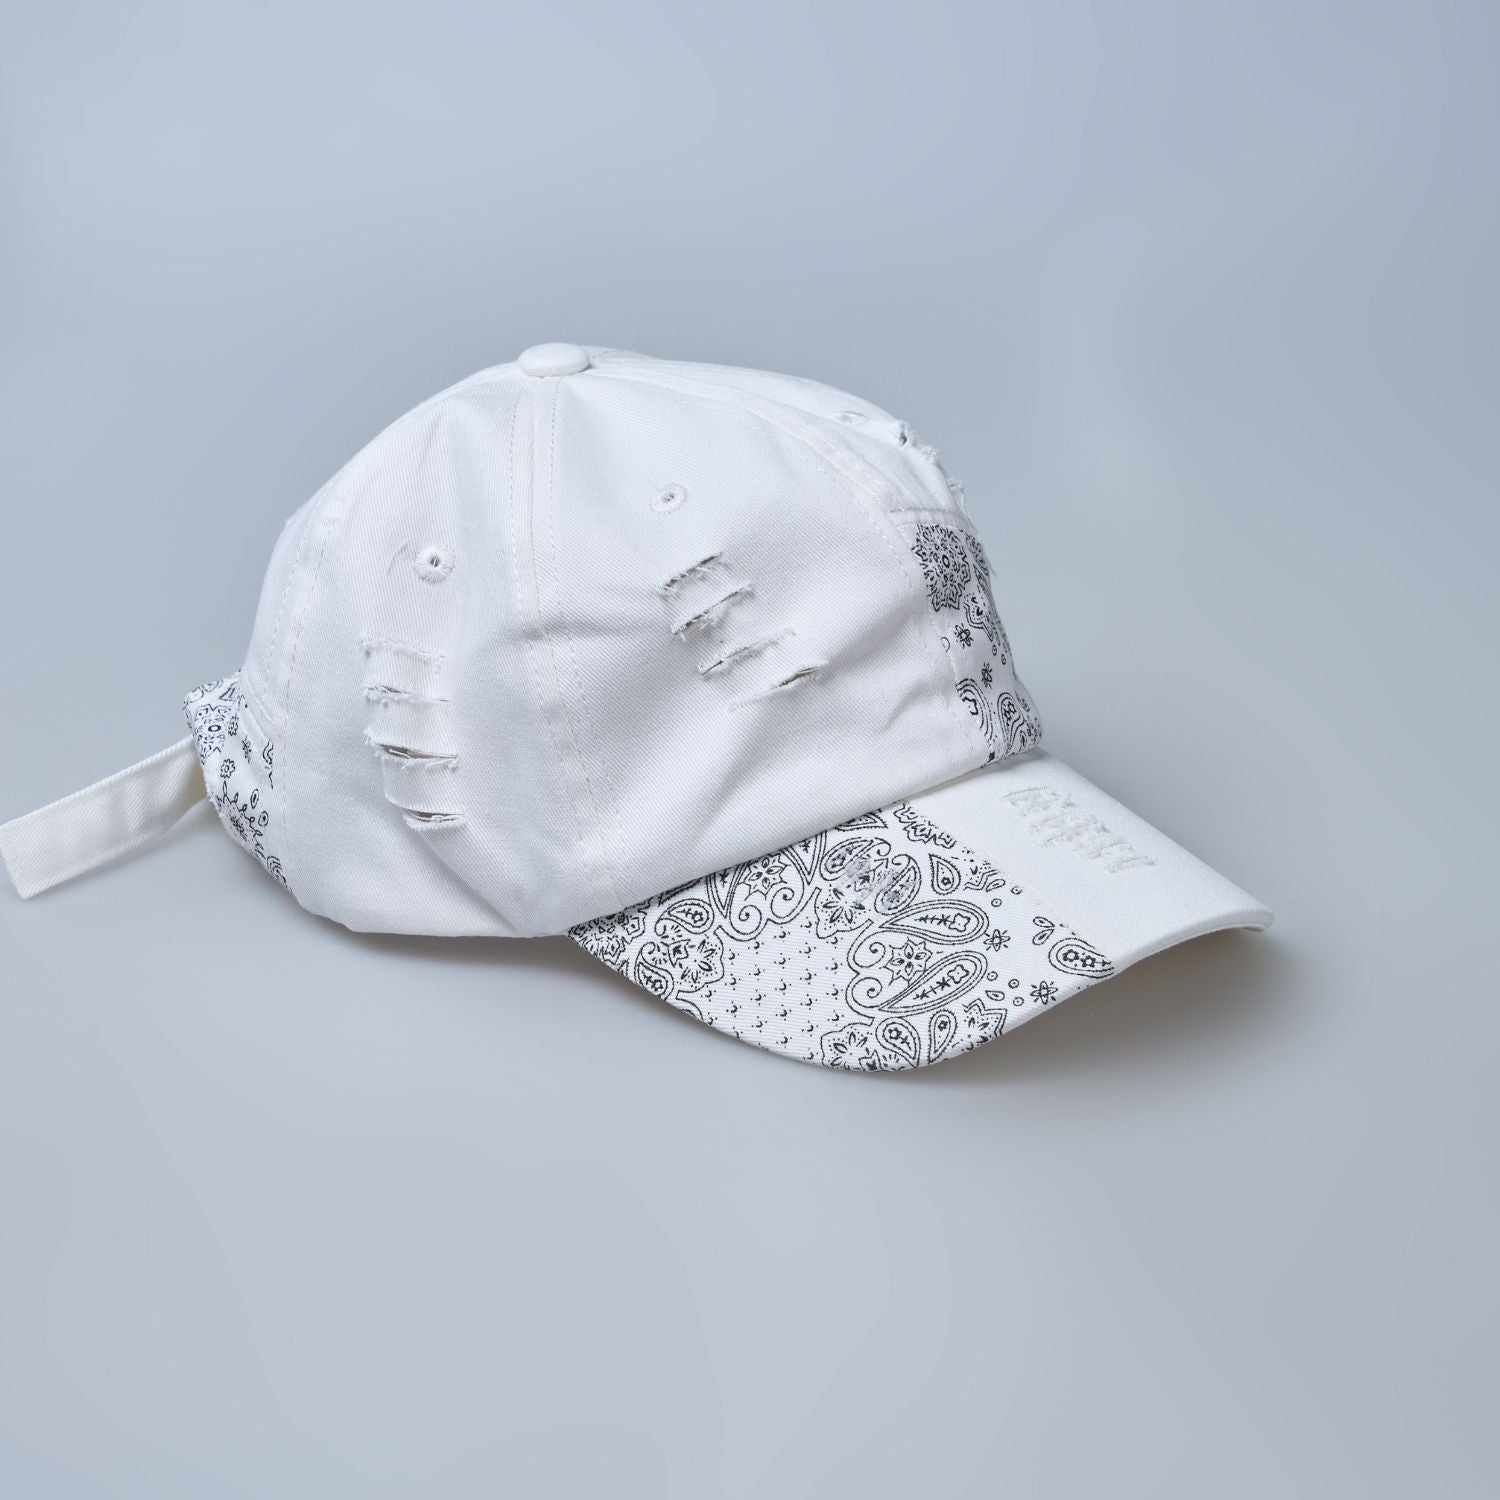 white colored, wide brim designer cap for men with adjustable strap, side design close up.